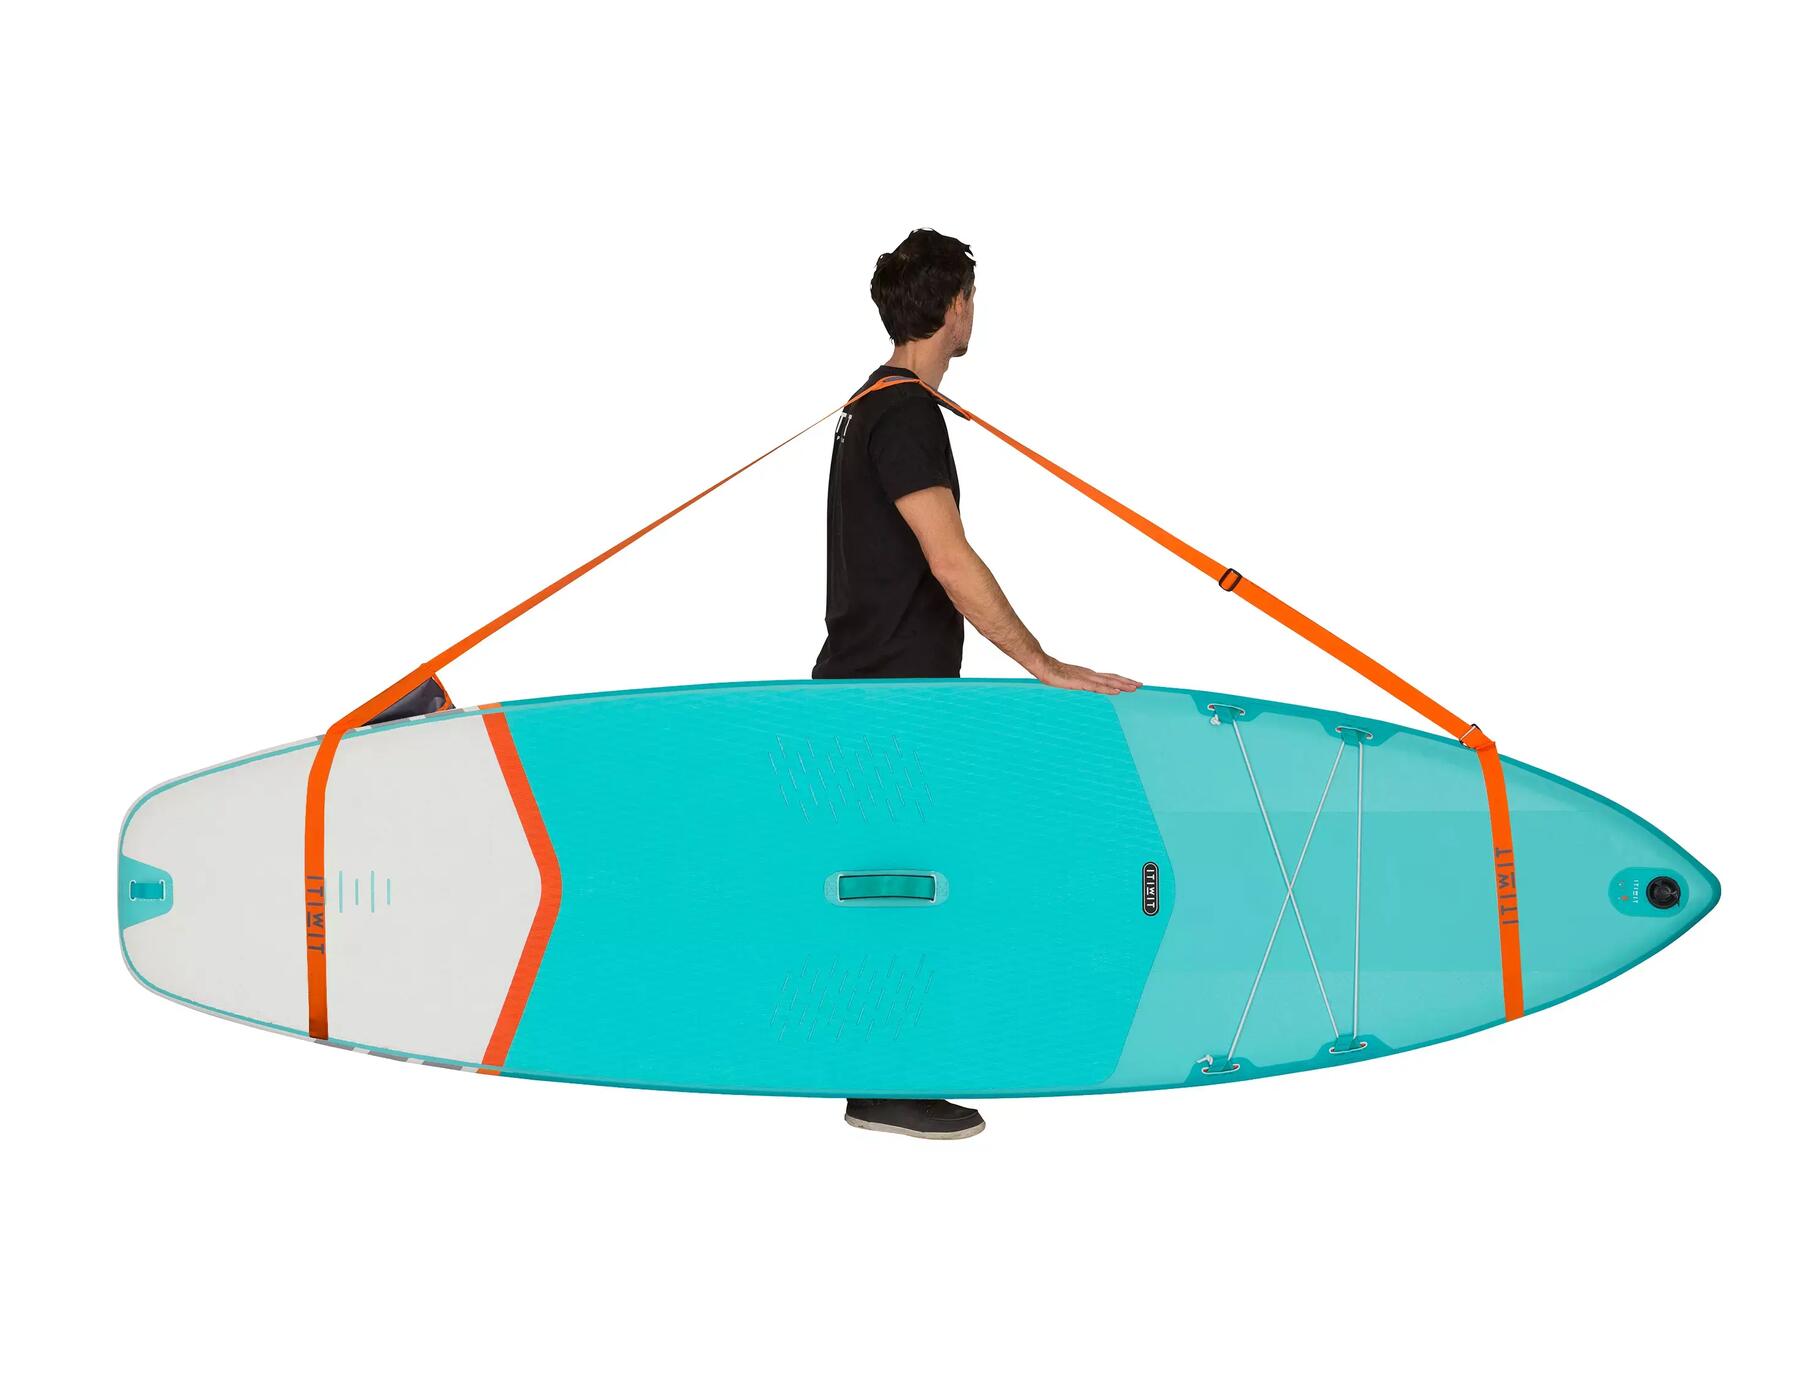 Wie kann man sein aufblasbares Paddle transportieren?